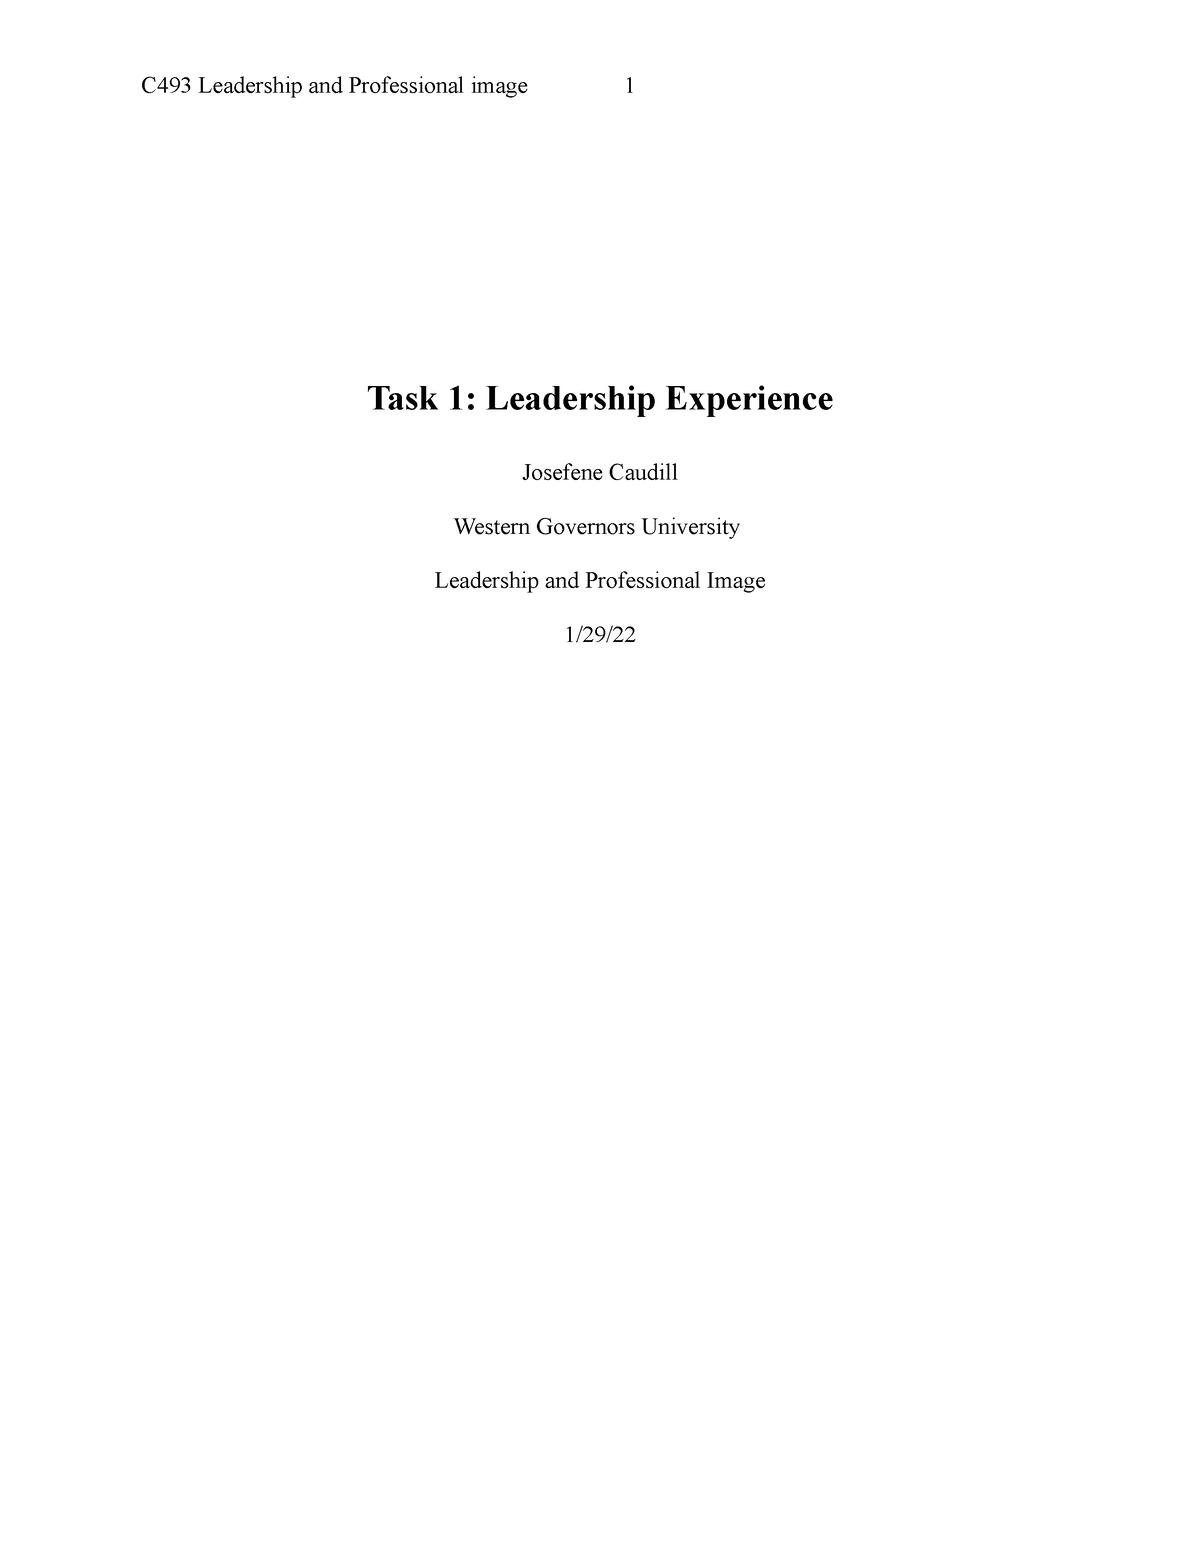 wgu leadership and professional image task 1